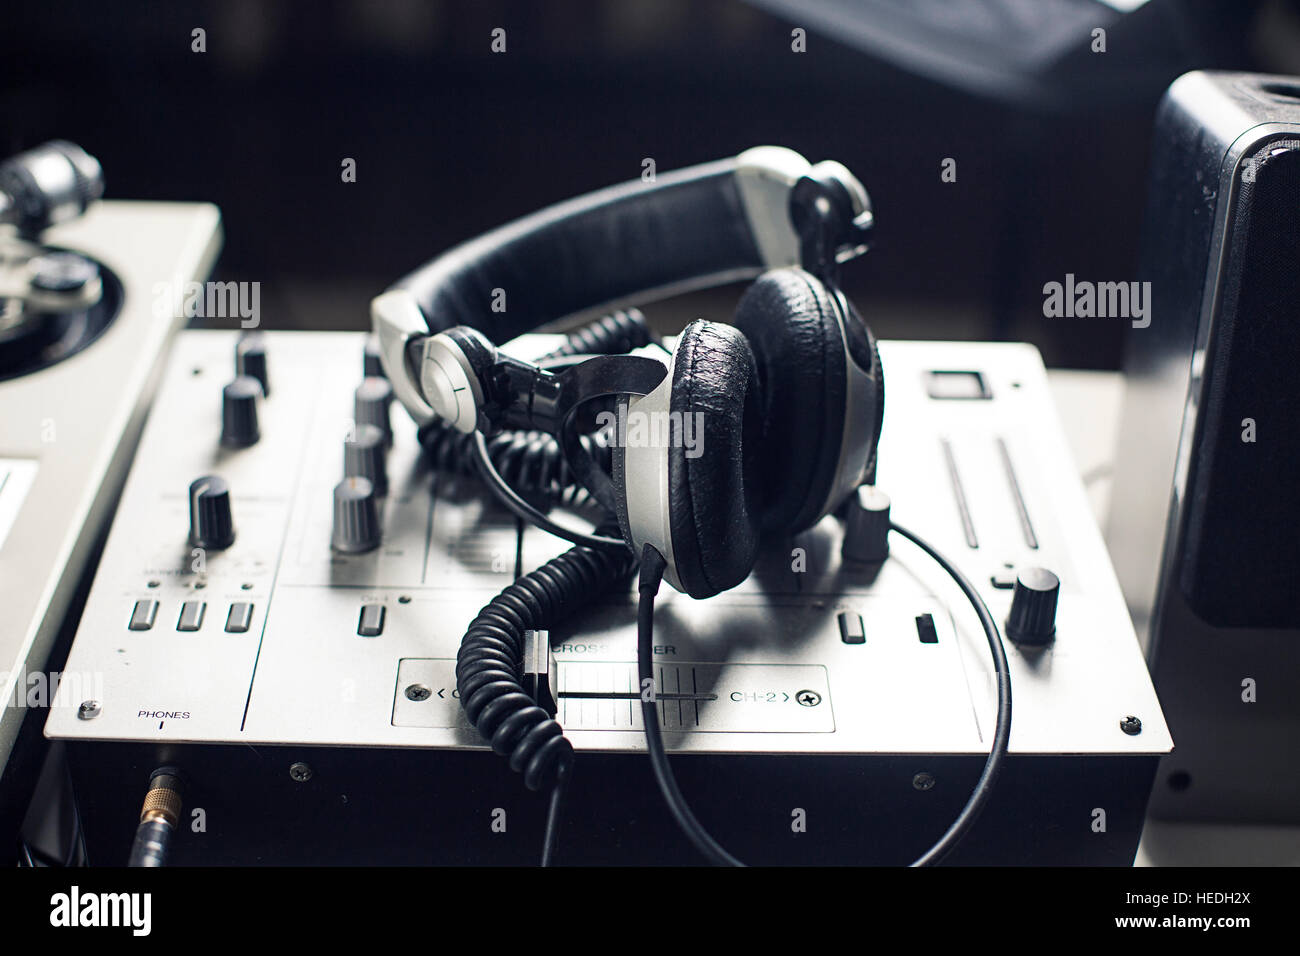 DJ mixer Stock Photo